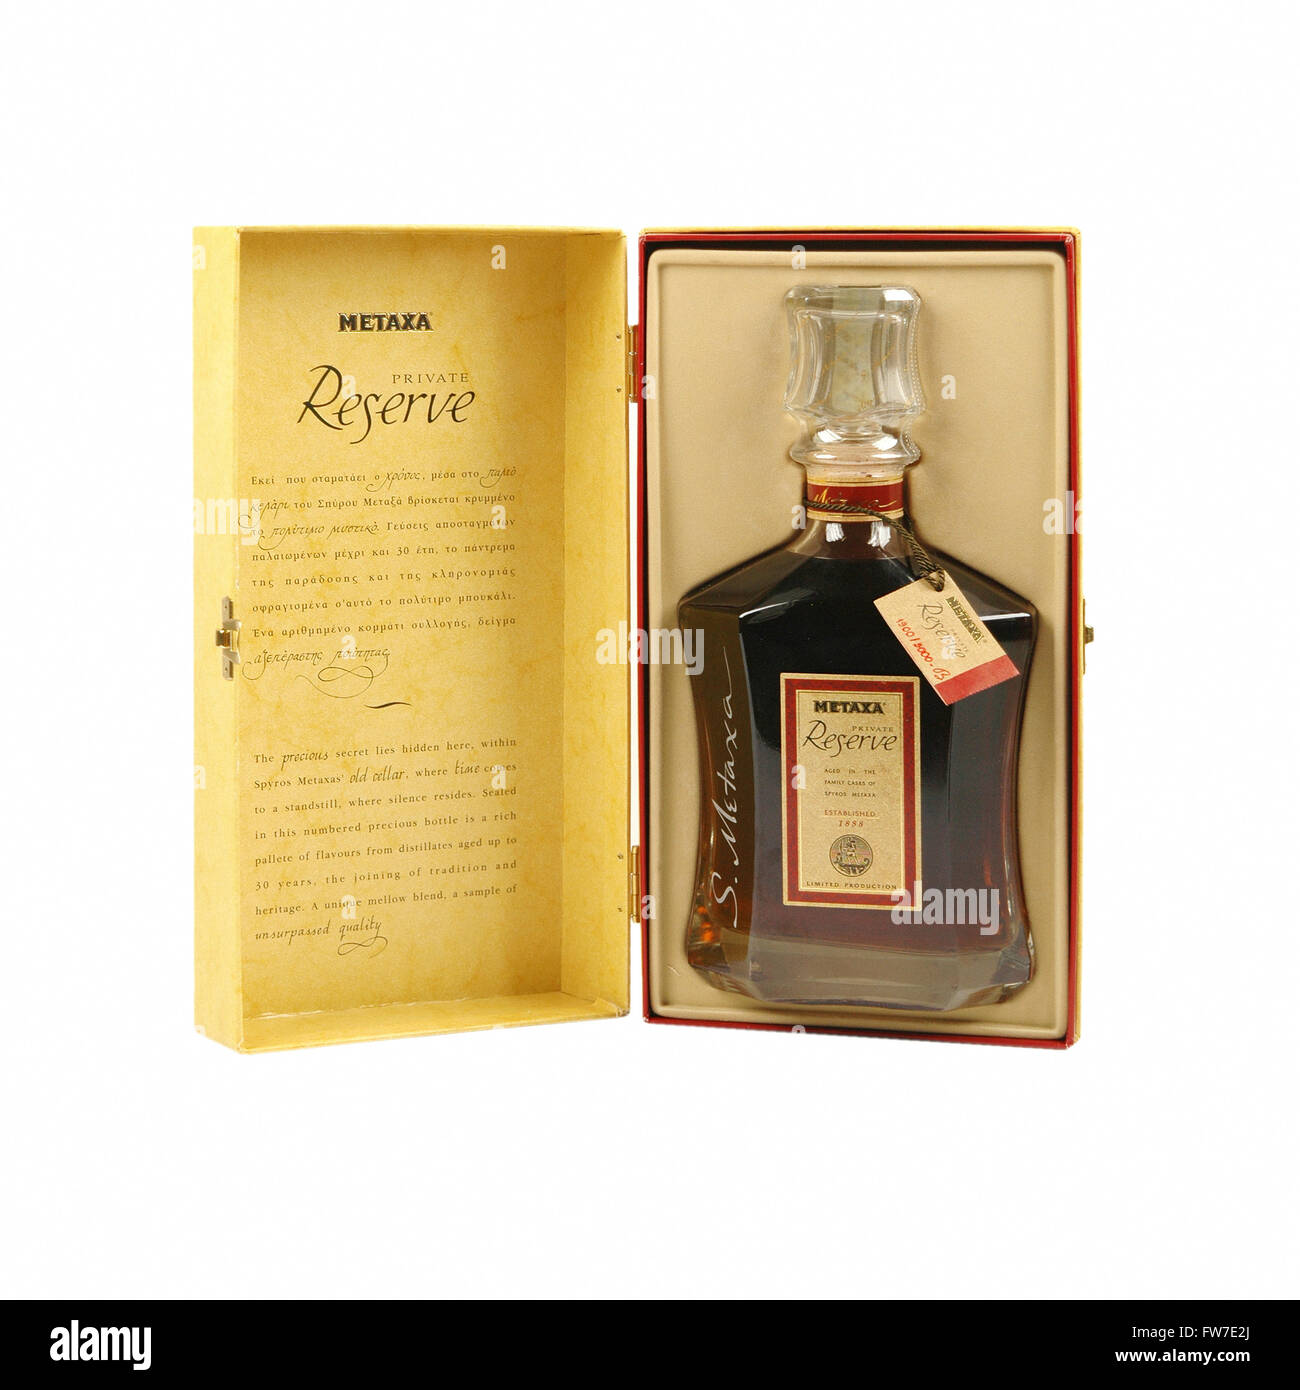 METAXA Private Reserve Flasche in einer eleganten Schachtel Stockfoto